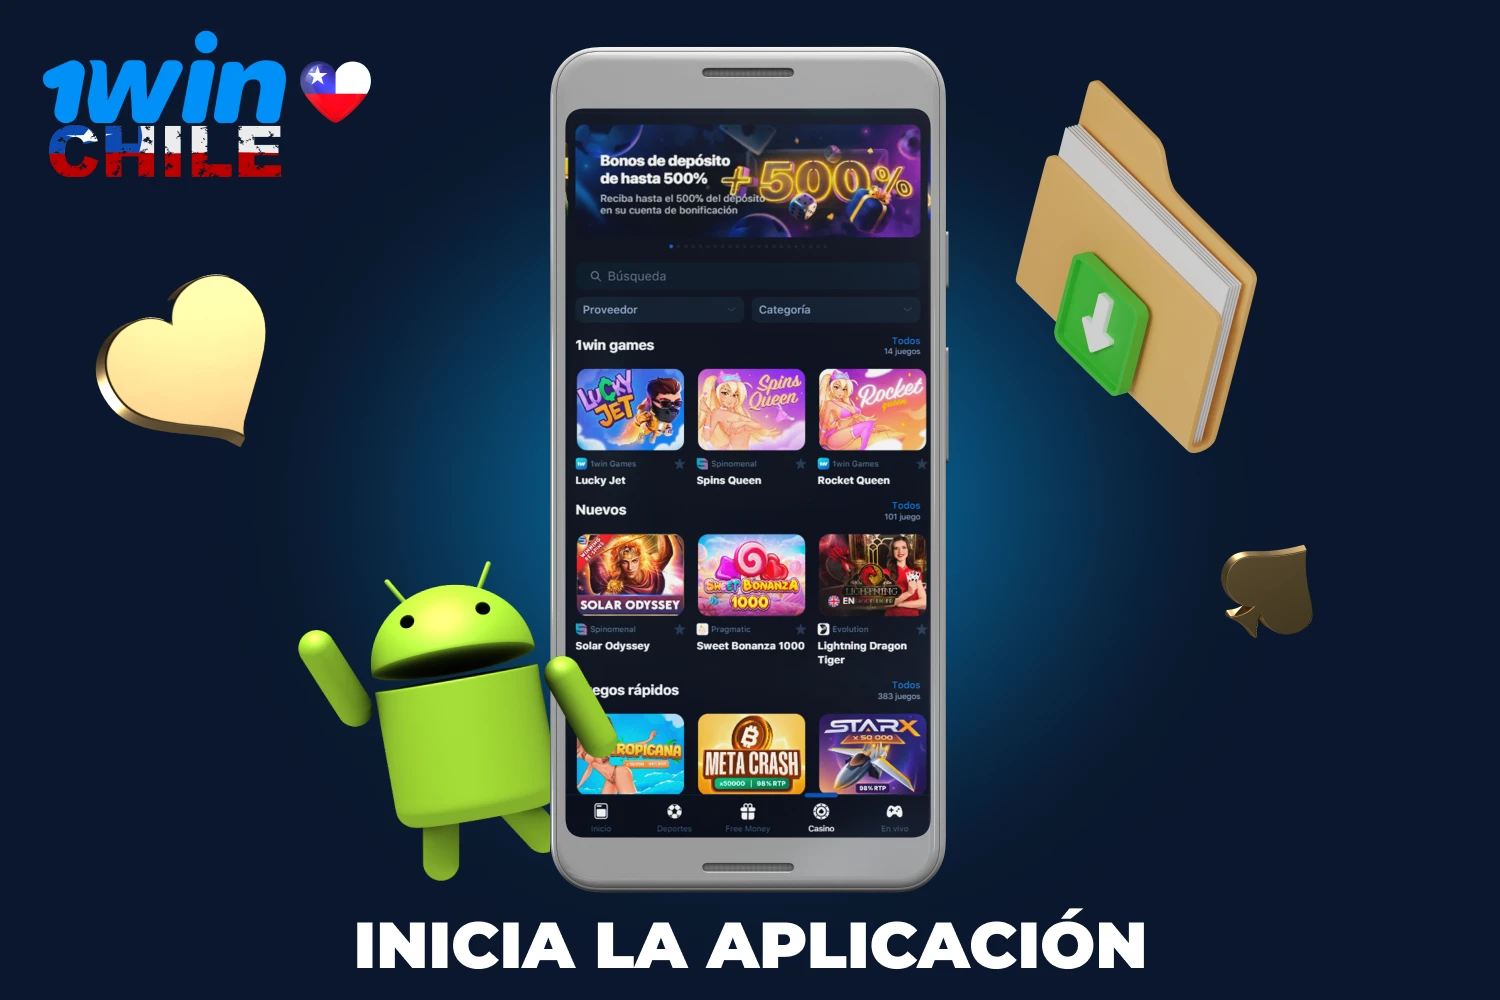 Inicie la aplicación 1win pulsando el icono de la aplicación desde el menú o la pantalla de inicio de su dispositivo Android